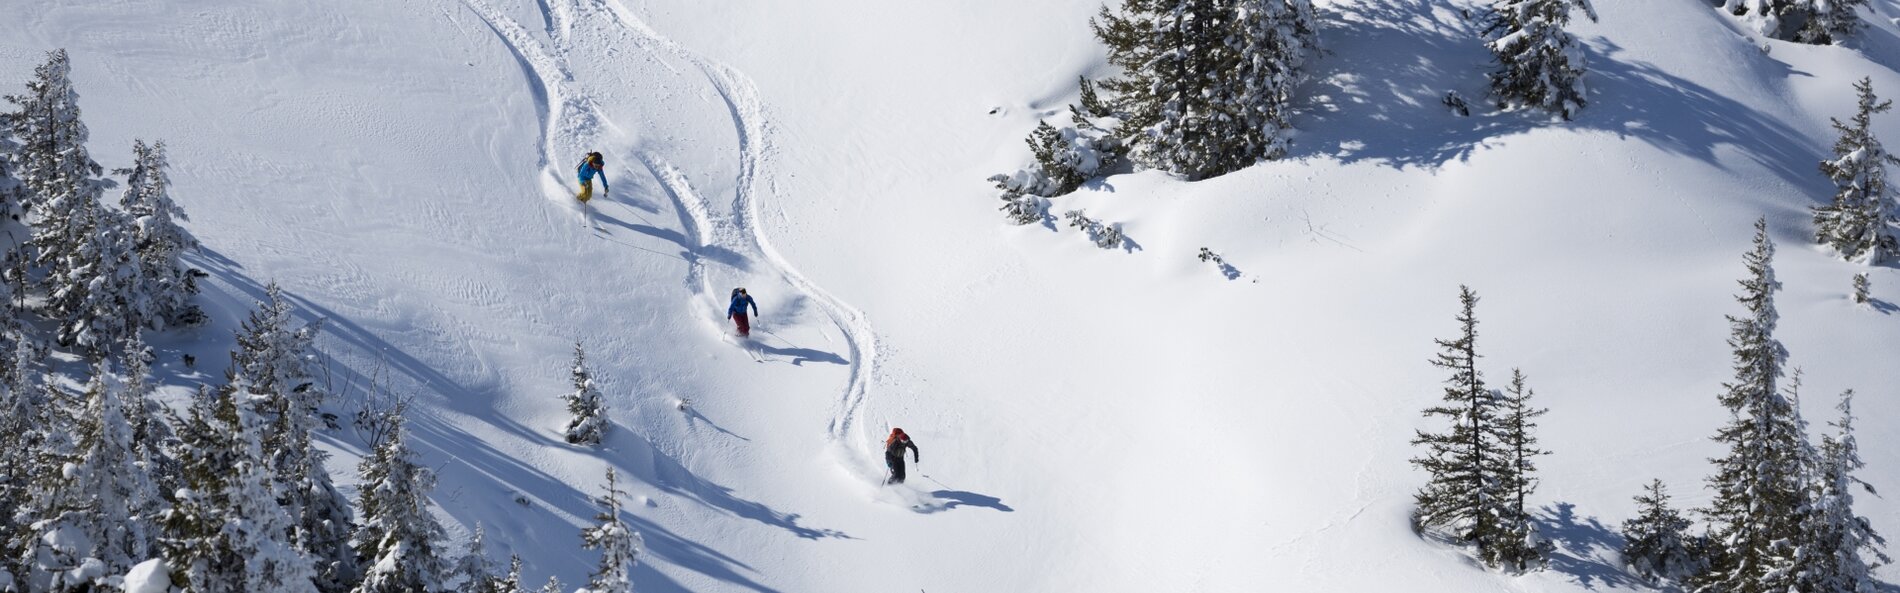 3 Skifahrer bei Abfahrt durch Gelände